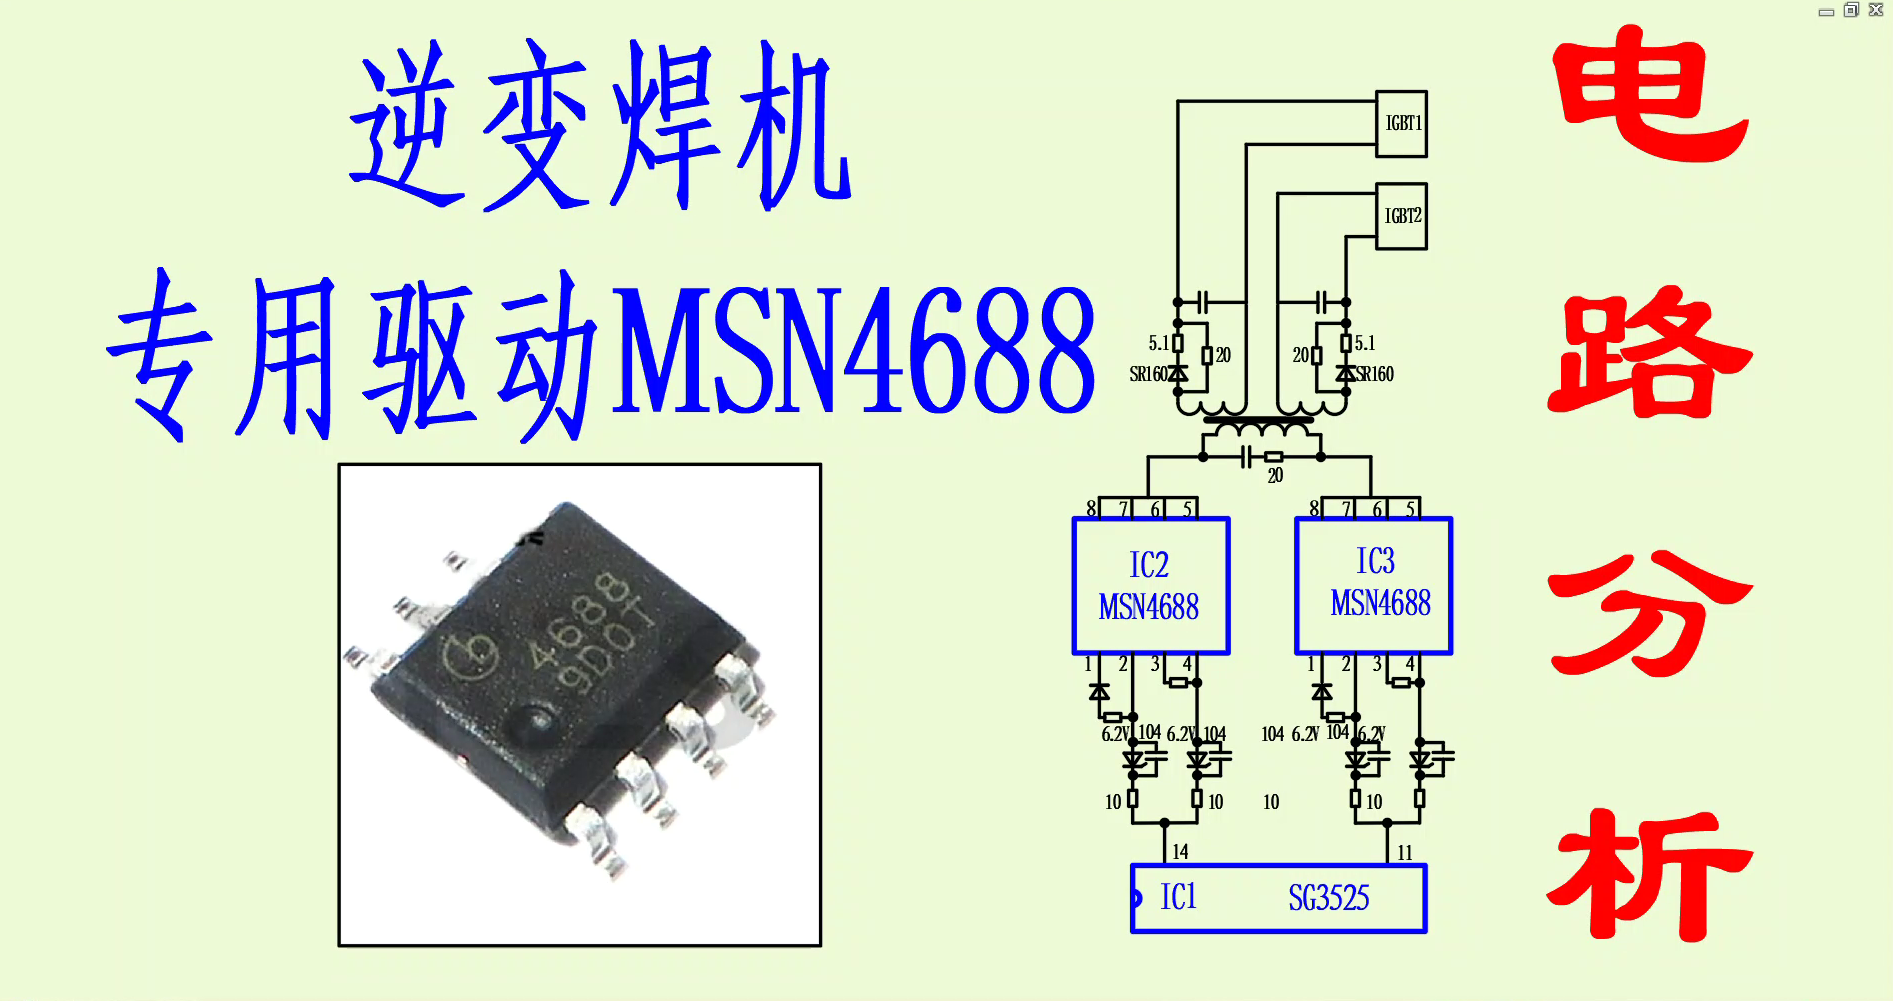 逆變焊機專用驅動芯片MSN4688電路分析